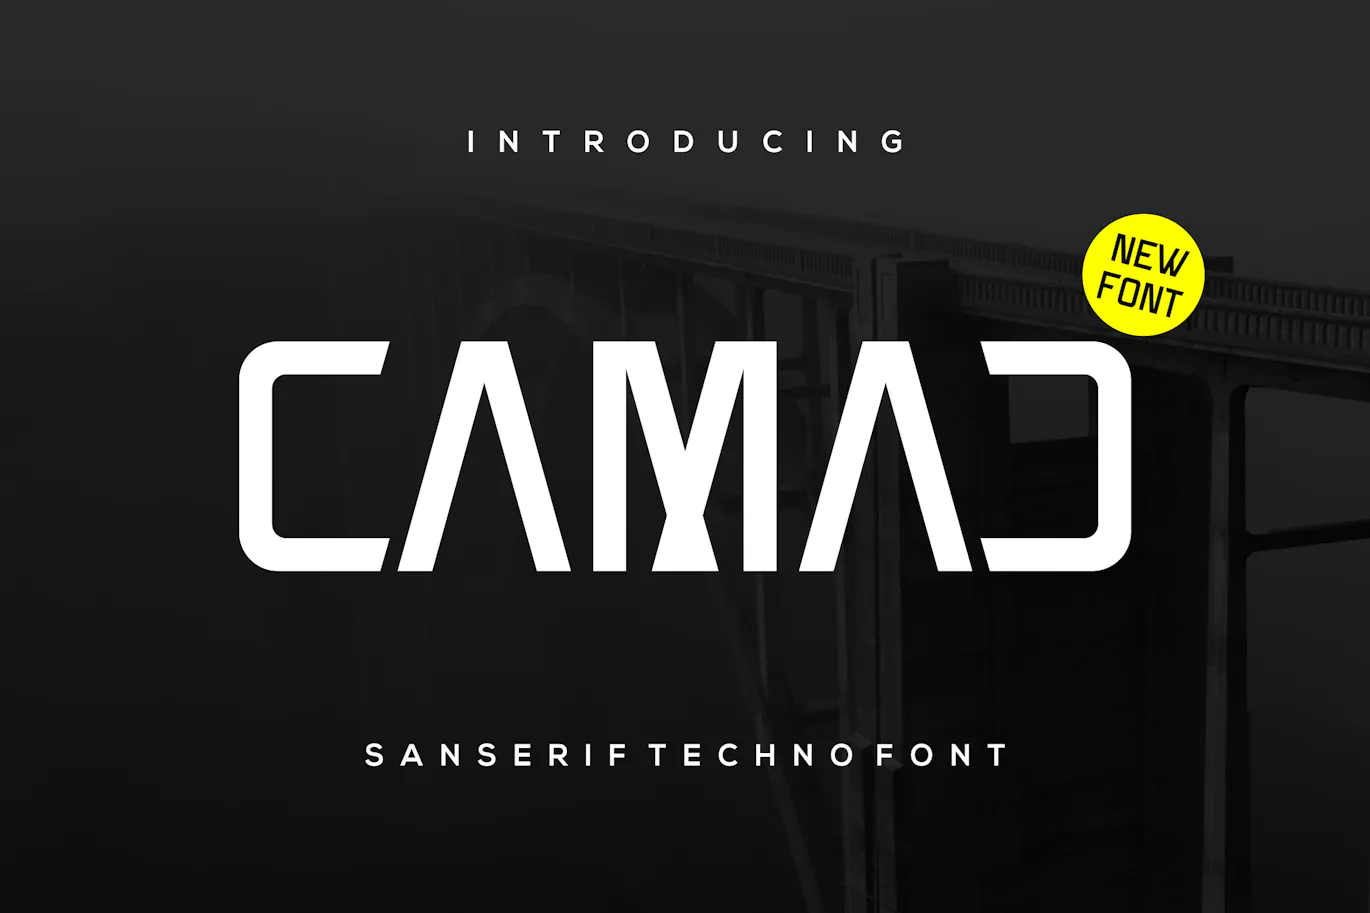 极简科技风格的英文无衬线电竞字体 - Camad 设计字体 第1张